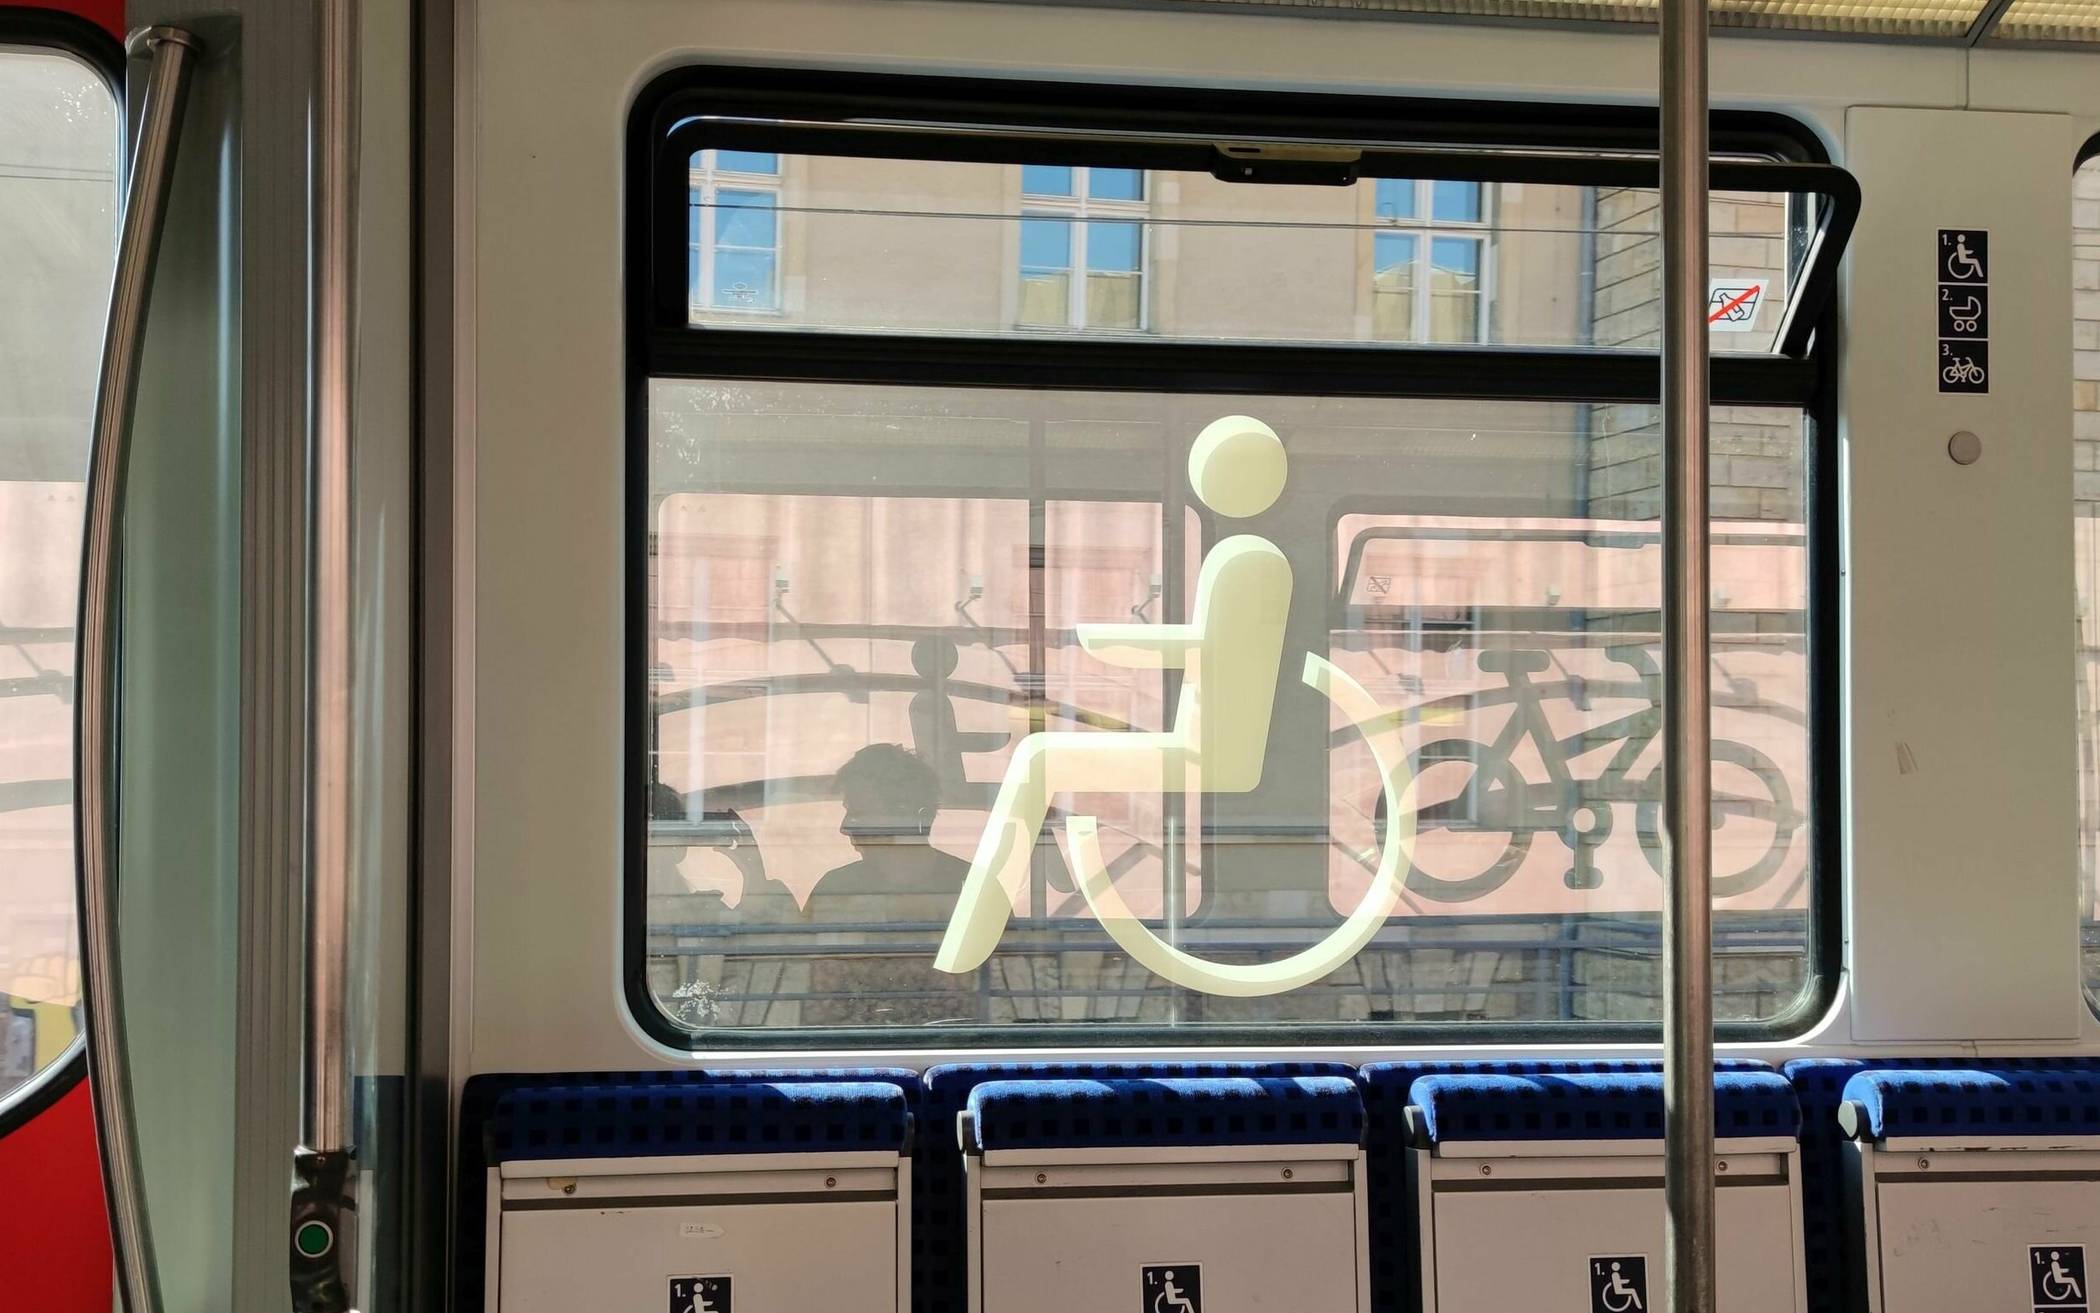 Sitzplätze für mobilitätseingeschränkte Personen im öffentlichen Nahverkehr. Welche Barrieren aber erschweren den Alltag in der eigenen Wohnung?